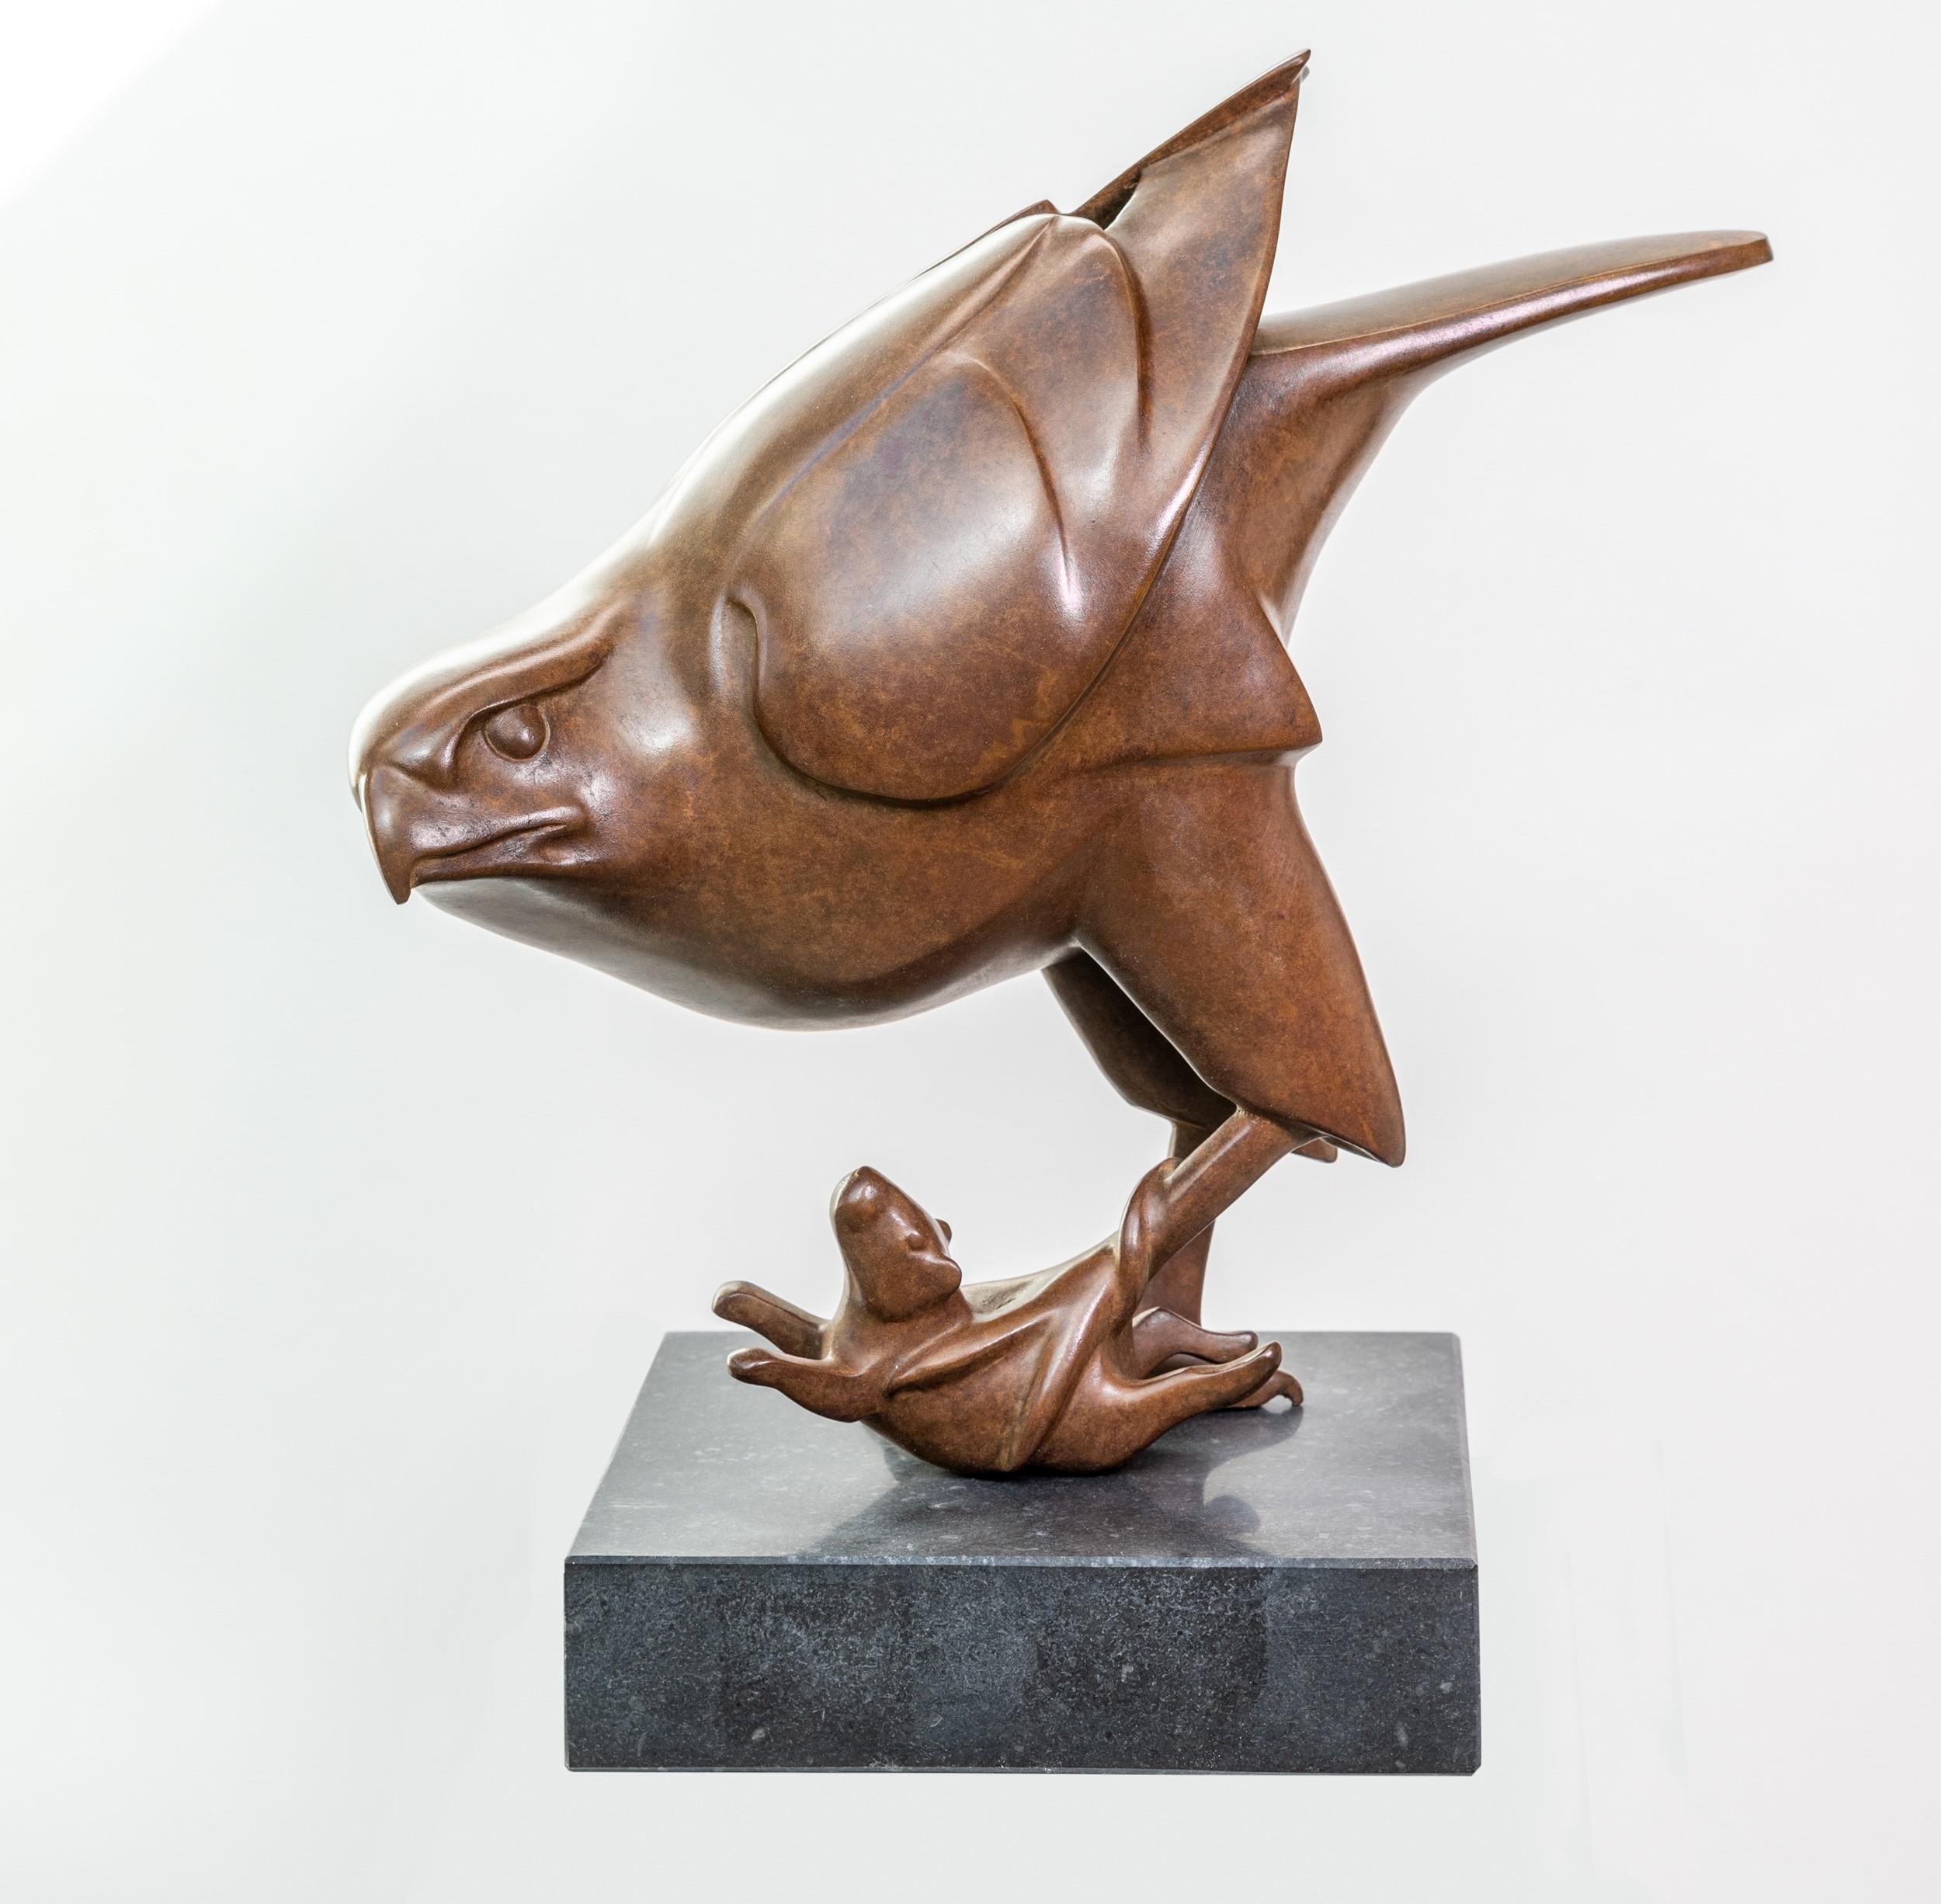 Roofvogel met Muis Prey Bird with Mouse Bronze Sculpture Animal Bird In Stock 